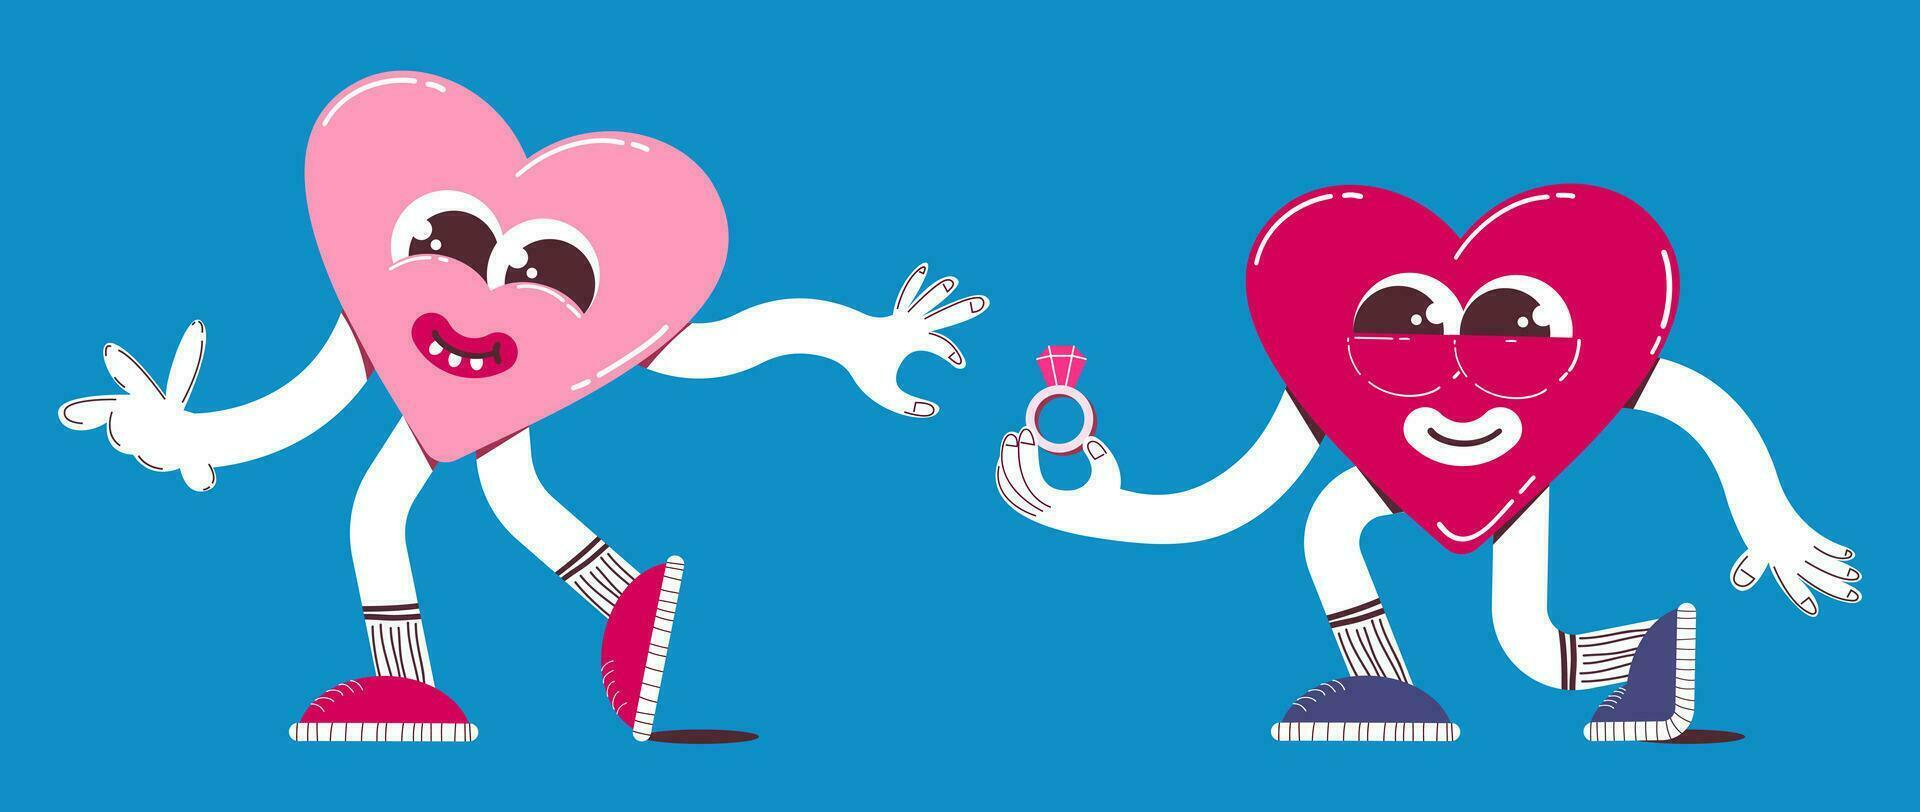 mignonne cœur personnage propose mariage dans rétro dessin animé style. branché, coloré, la Saint-Valentin journée cœur mascotte vecteur illustration.